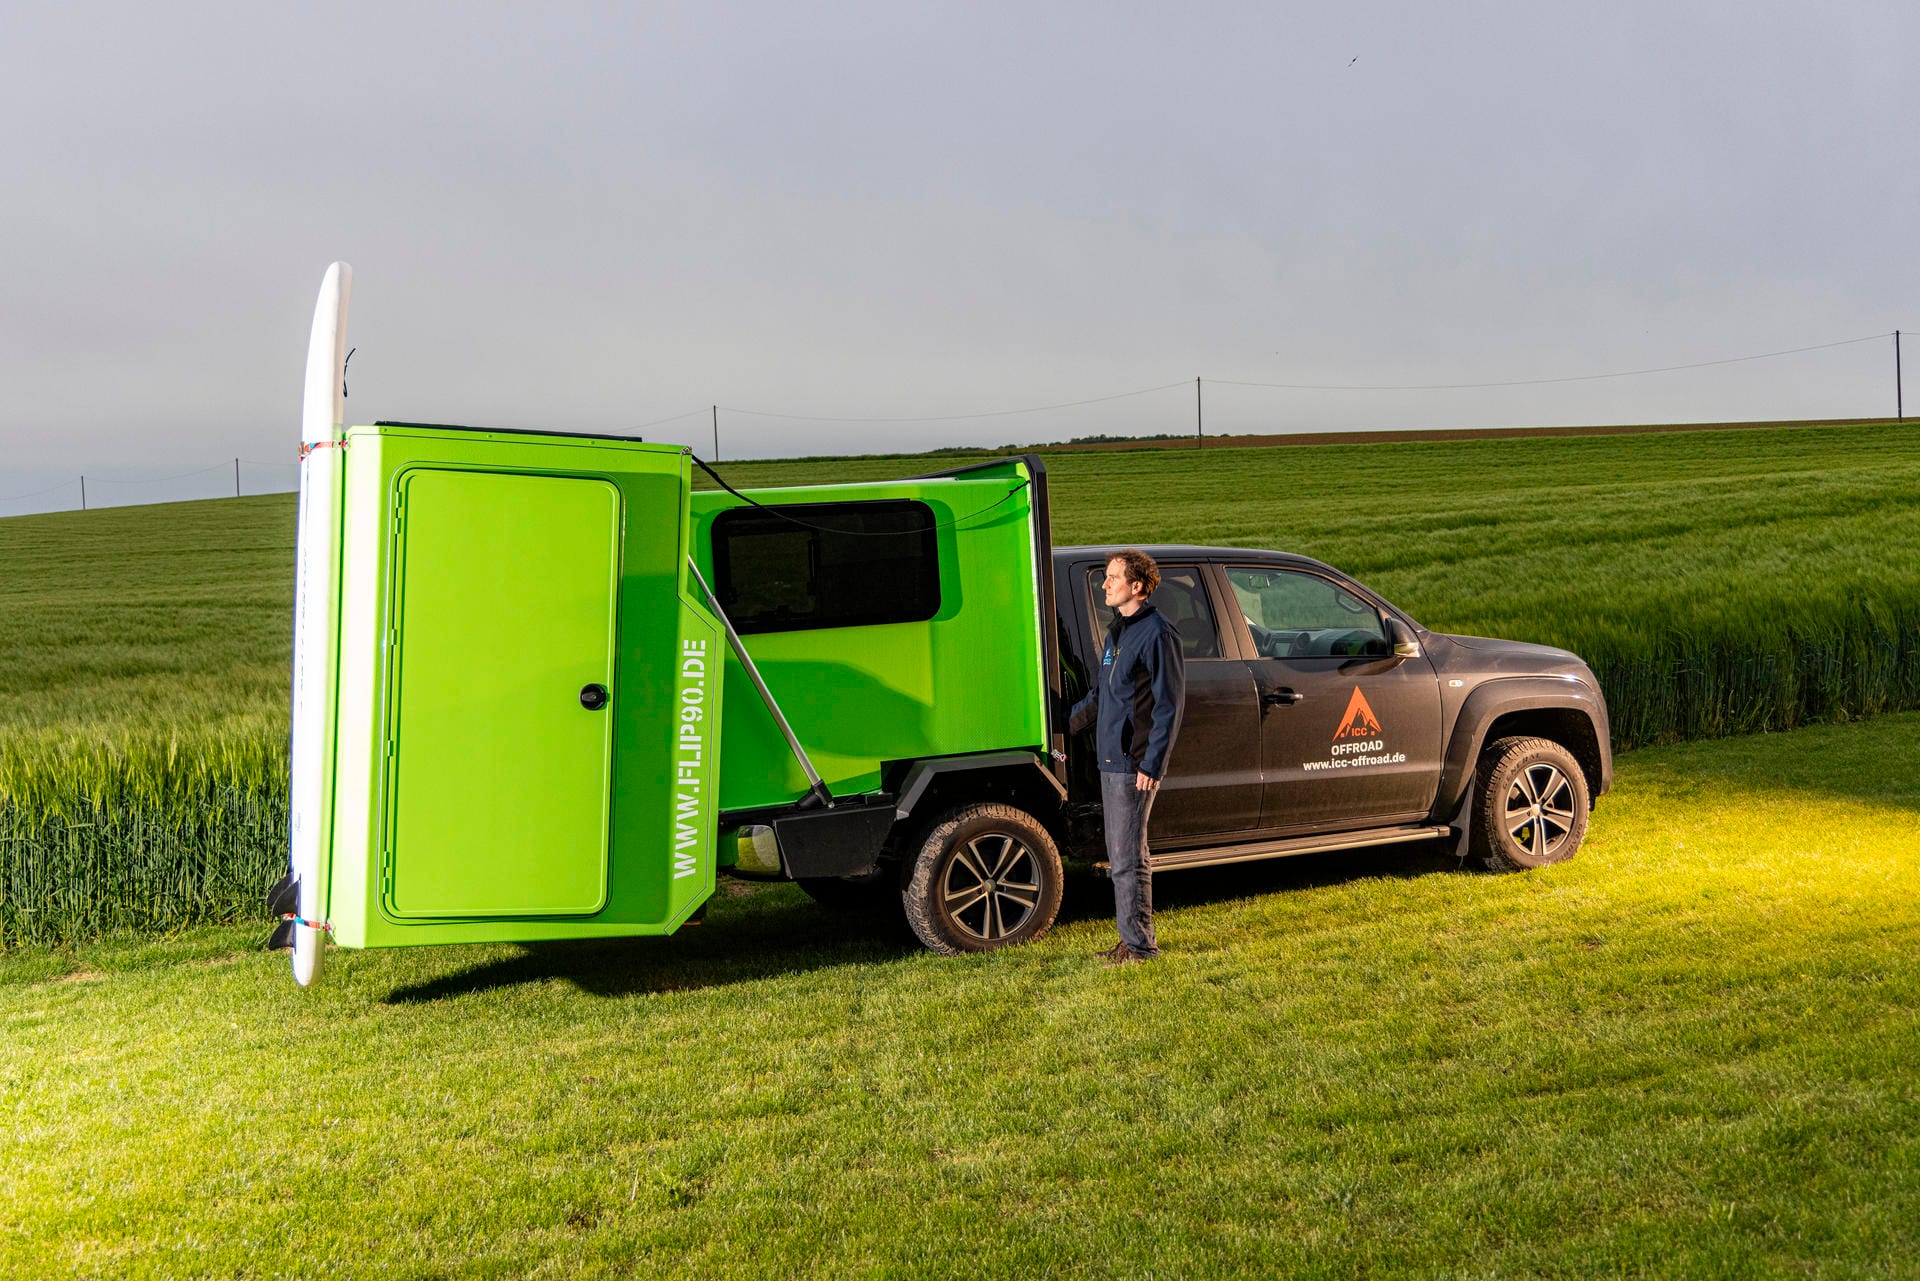 Auch der Hersteller Queensize Camper hat sich auf die Modul-Bauweise spezialisiert: Die quietschgrüne Kabine, die statt der üblichen Pickup-Ladefläche fest mit dem VW Amarok verbunden ist, besteht aus zwei großen, übereinanderliegenden Kunststoffkabinen.